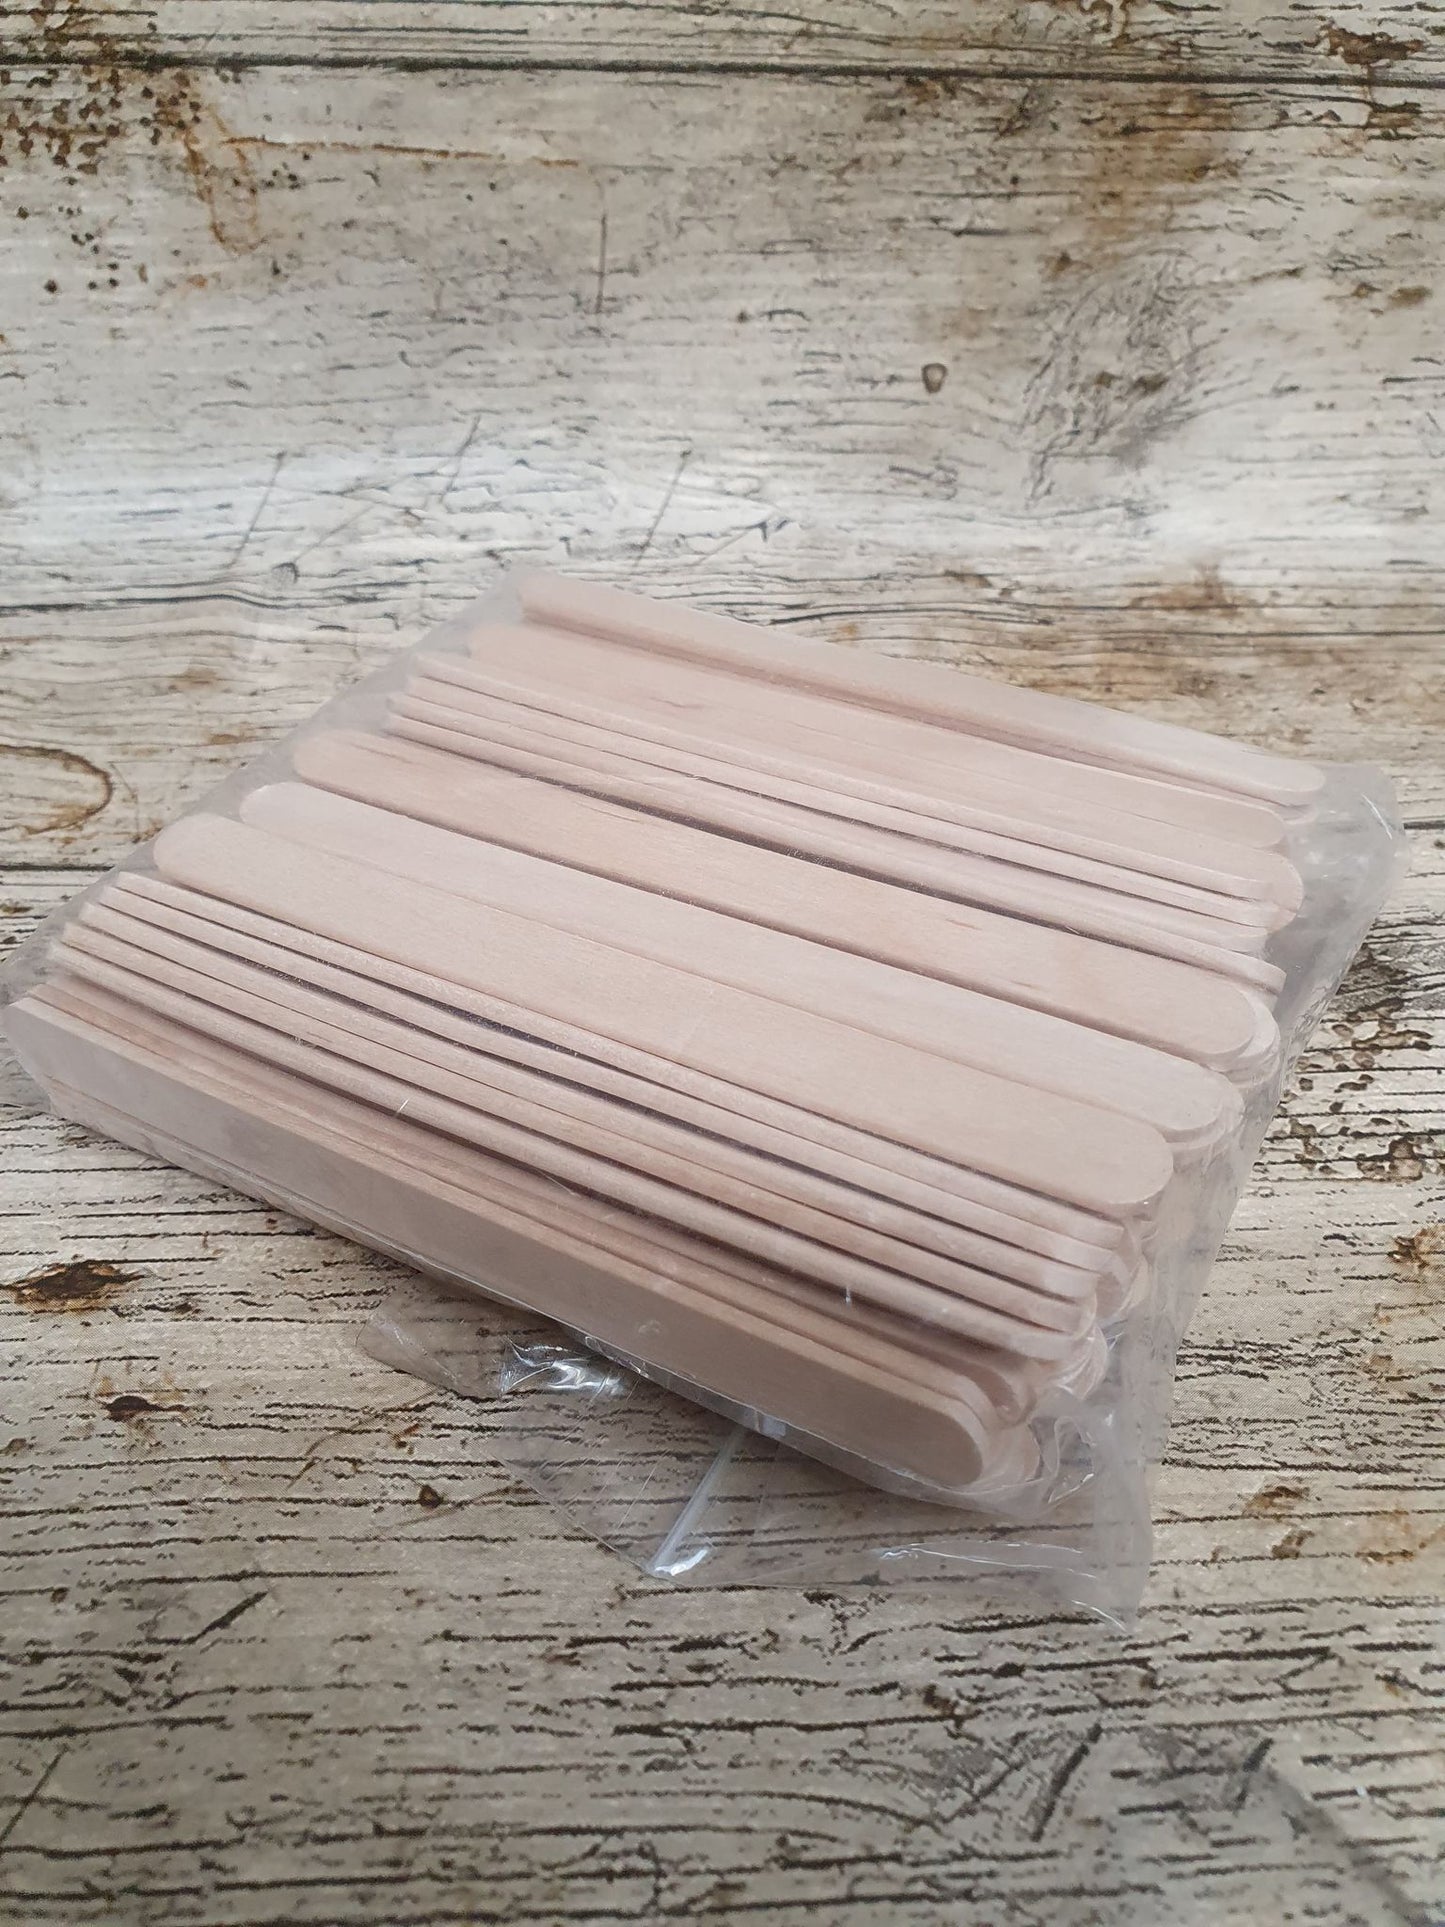 Wooden Mixing Sticks - Regular